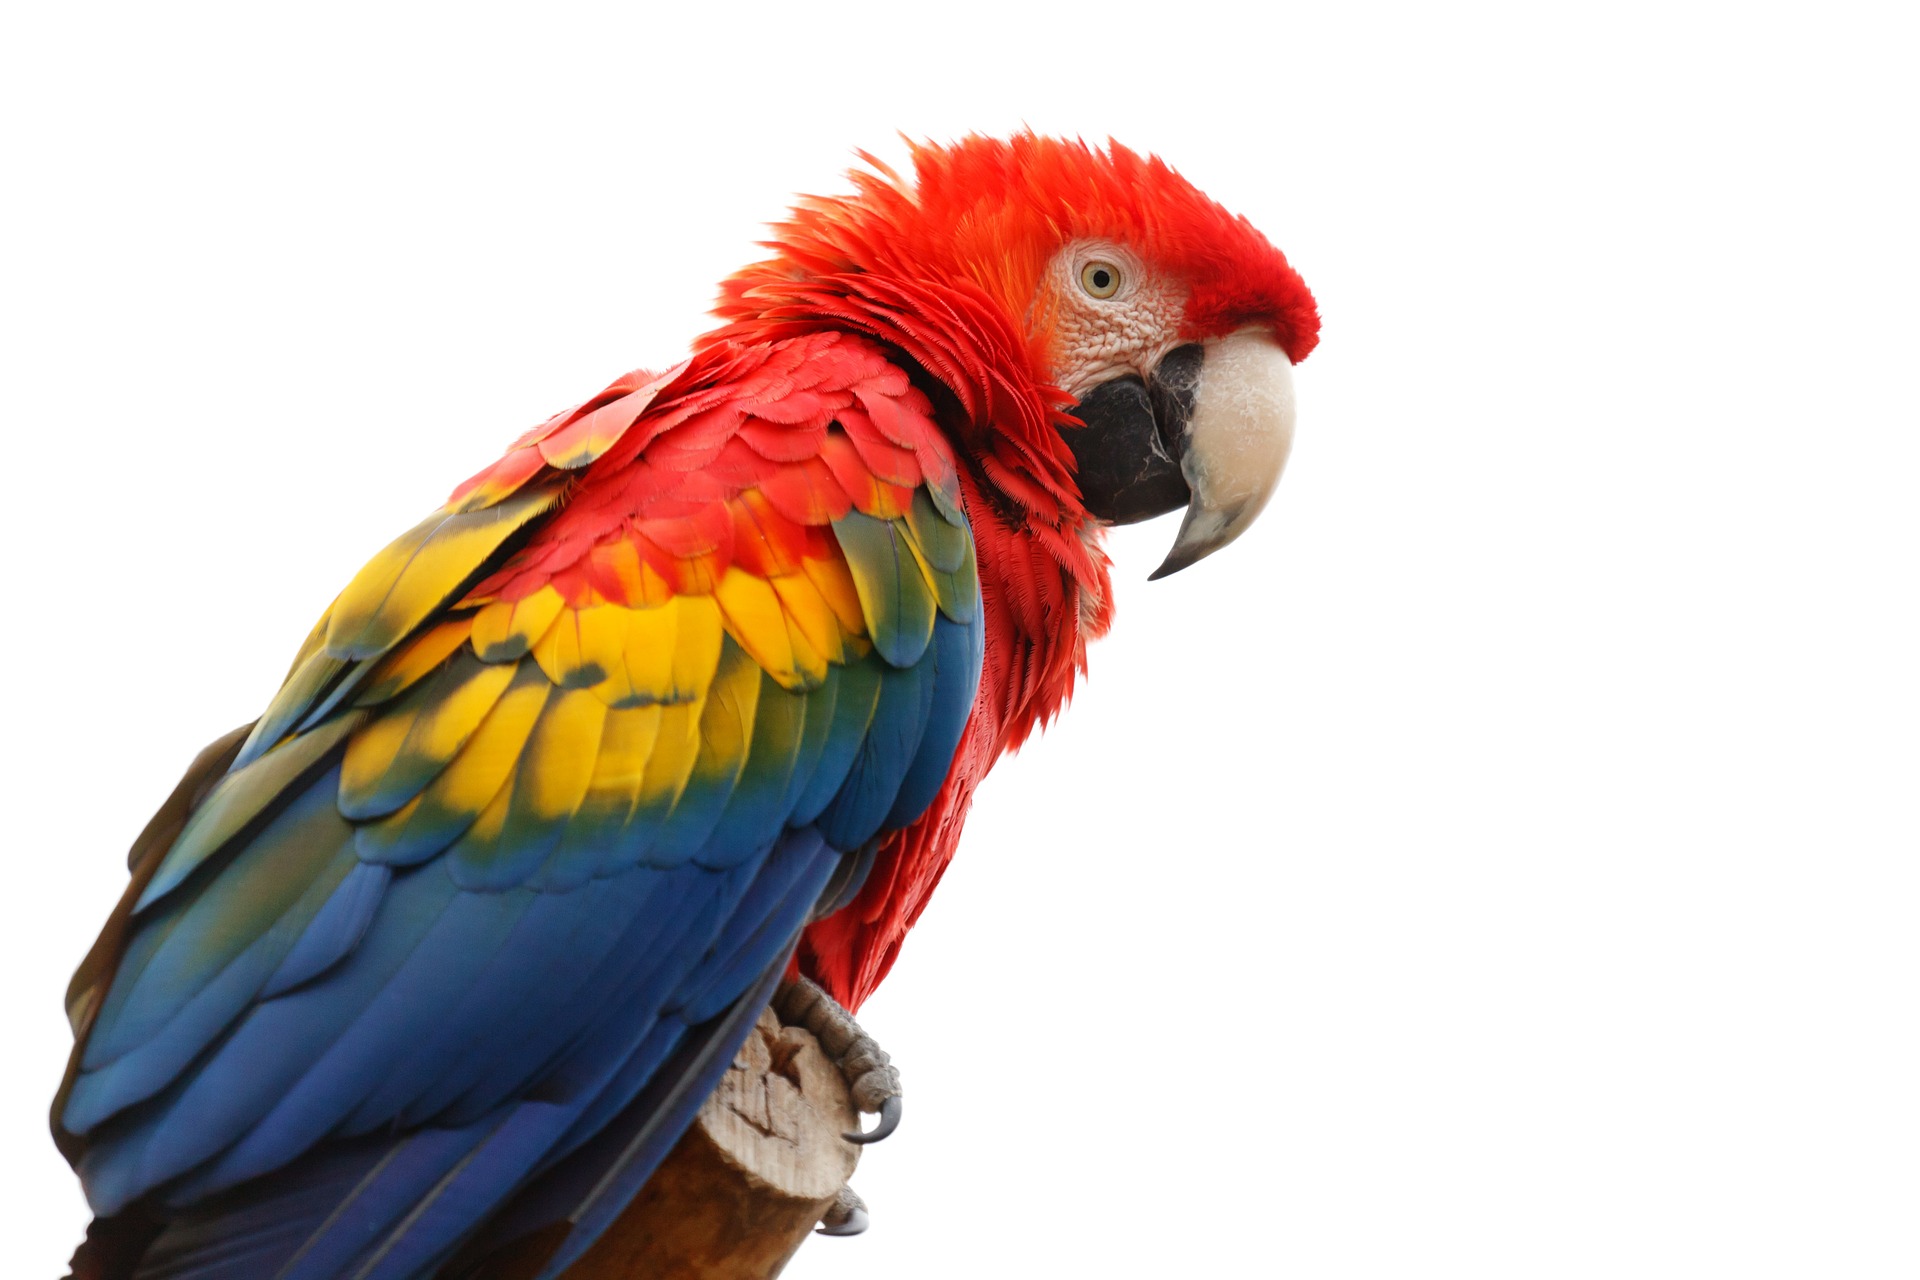 Papuga ara jest bardzo ciekawska, potrzebuje zapewnienia jej dużo atrakcji i urozmaicenia w klatce.